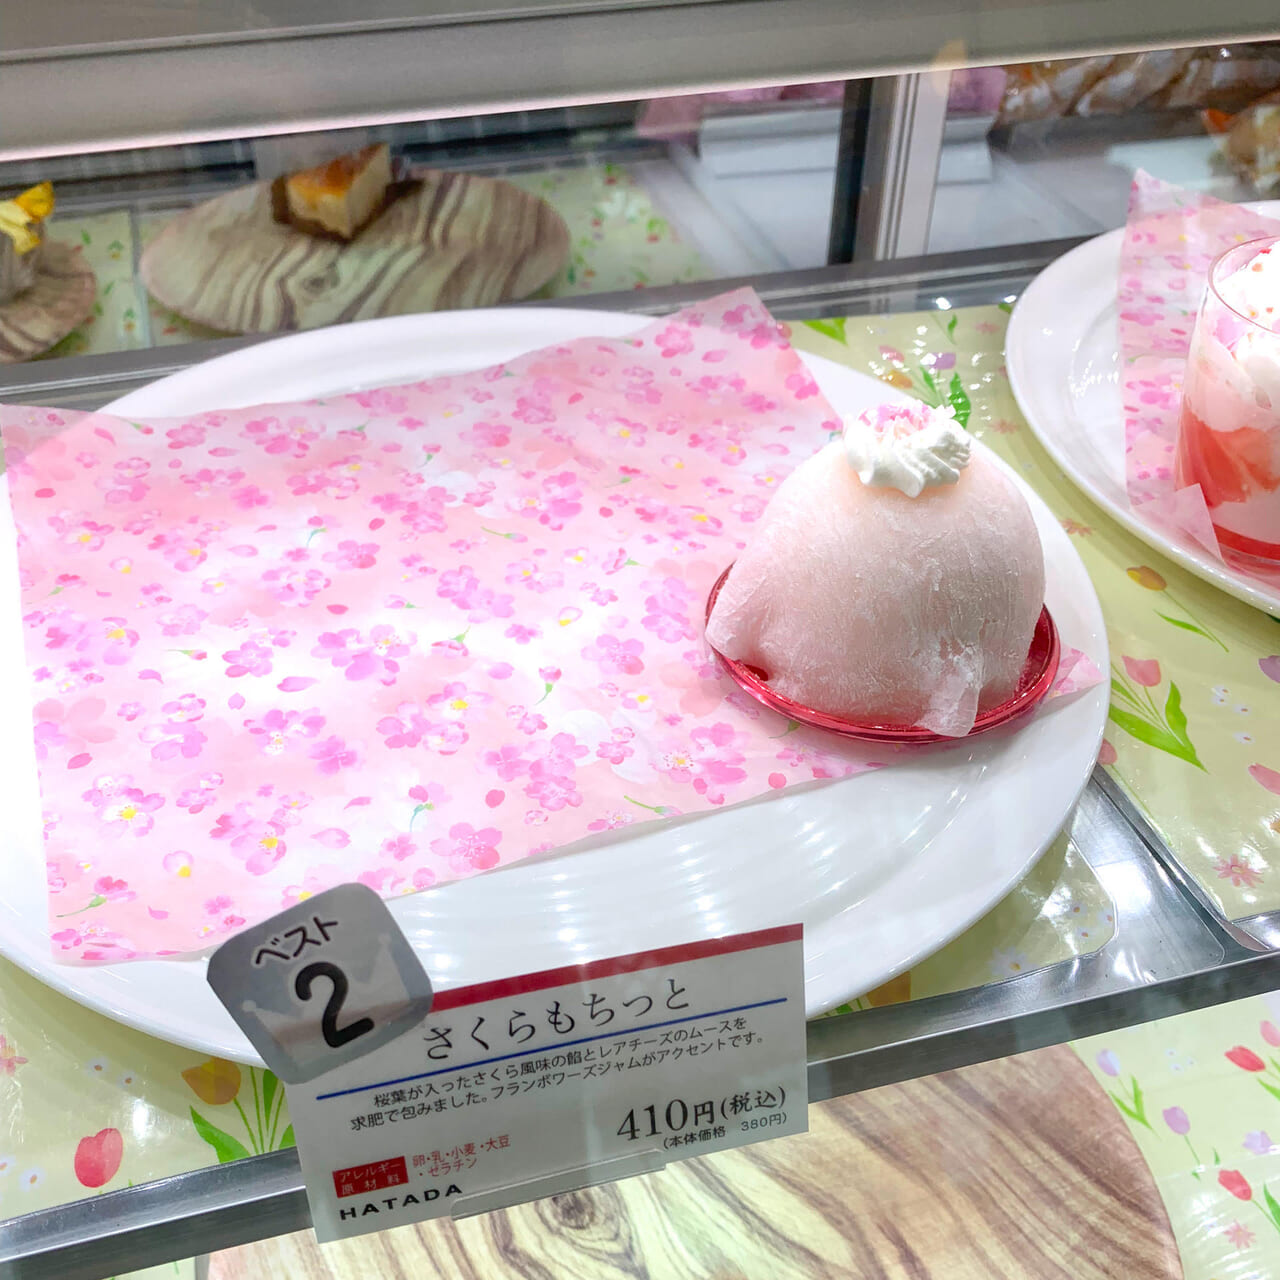 「ハタダ今治バイパス店」で春を感じることができるデザートたちが販売中!!